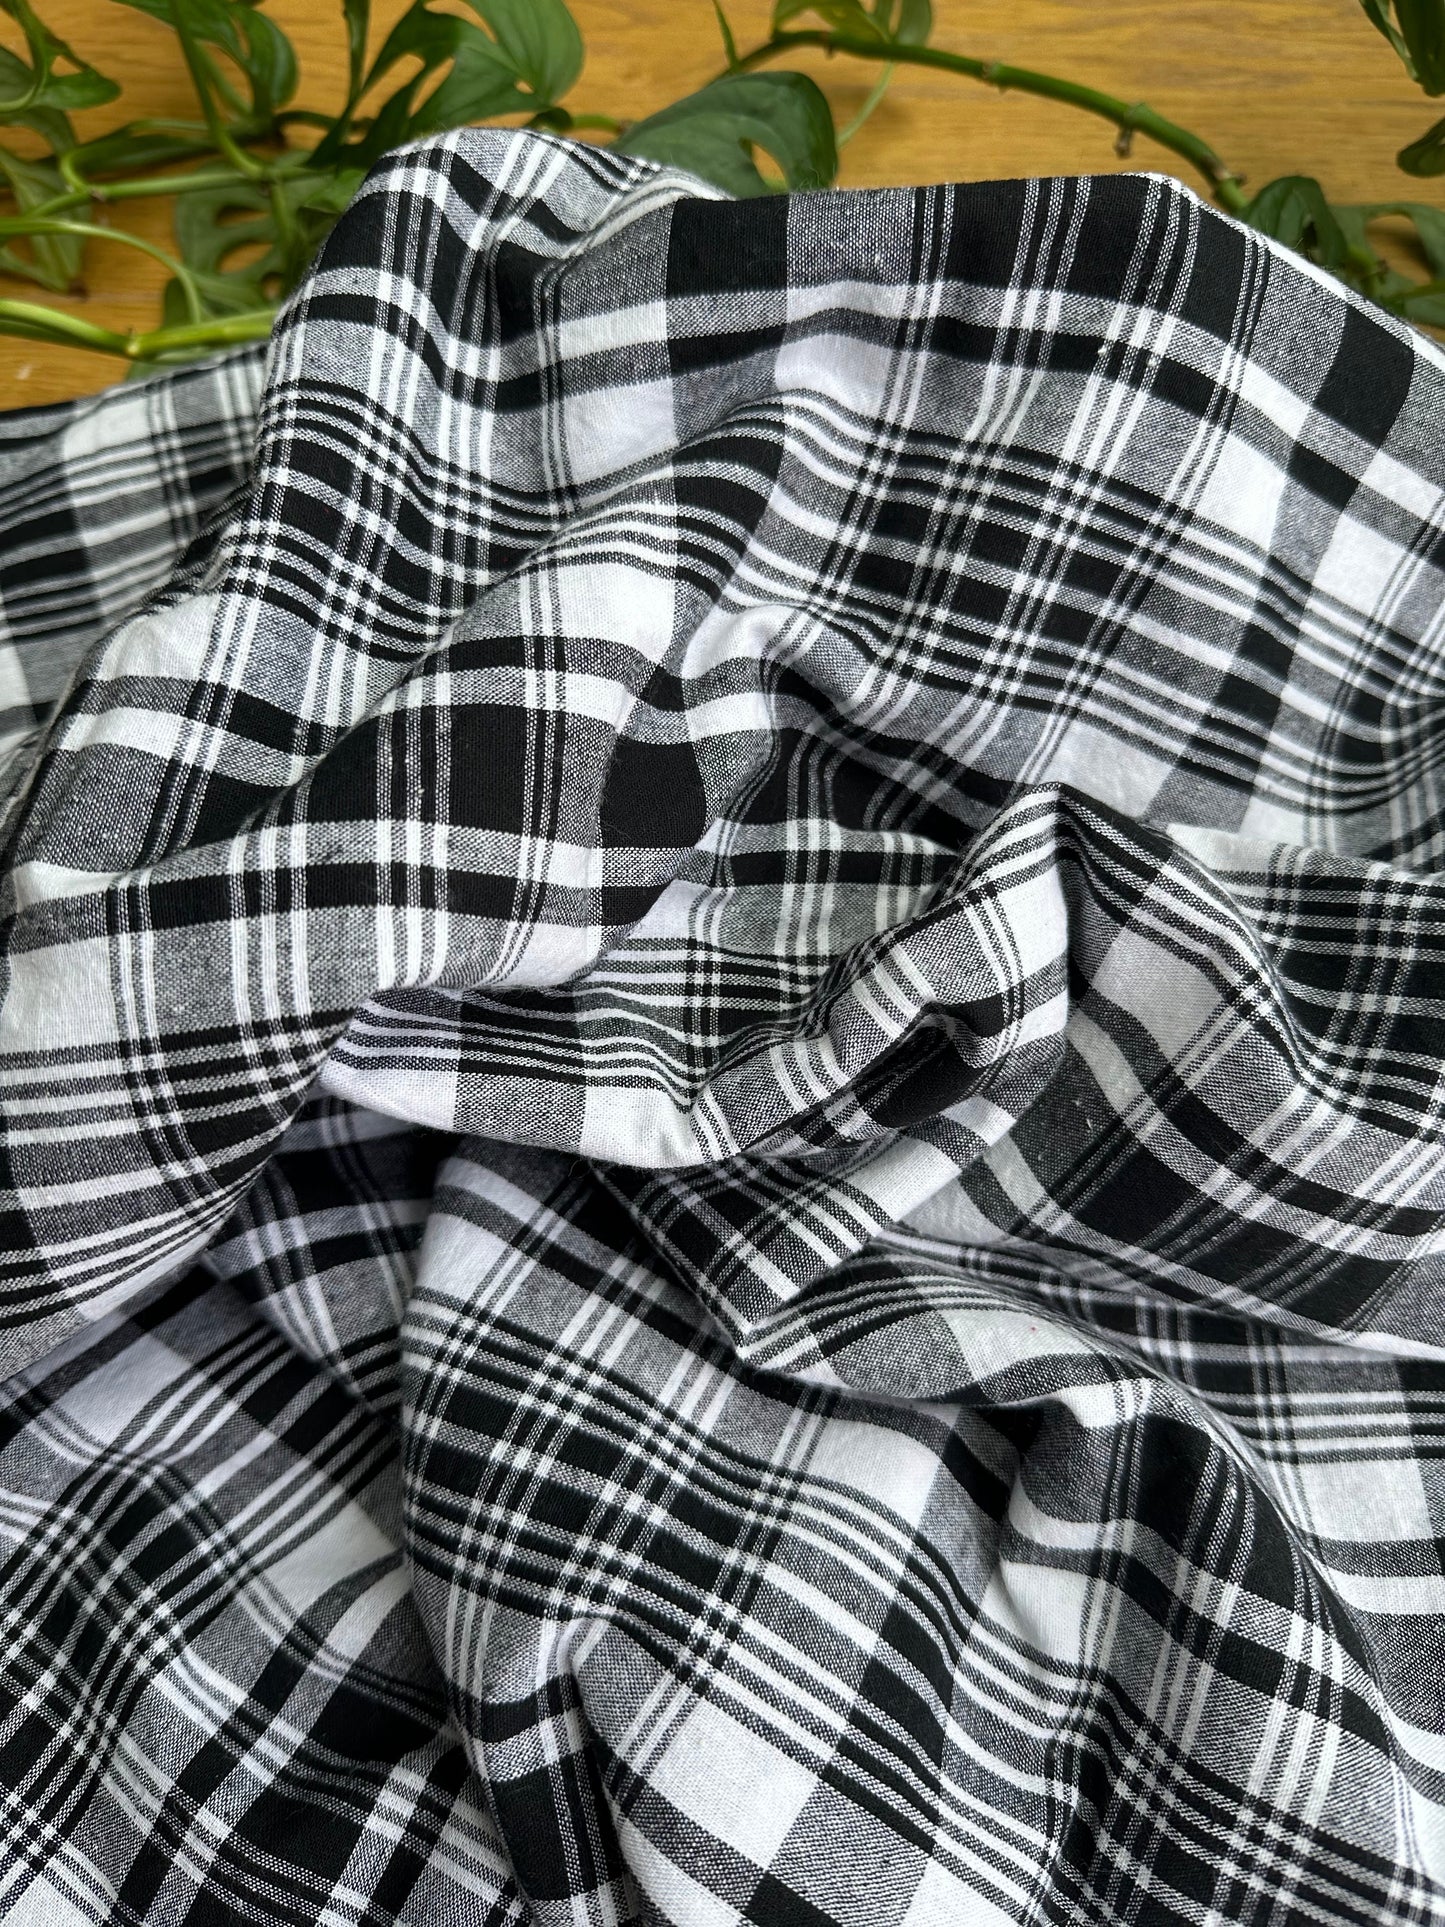 Couverture bébé "Corossol" en madras noir et blanc